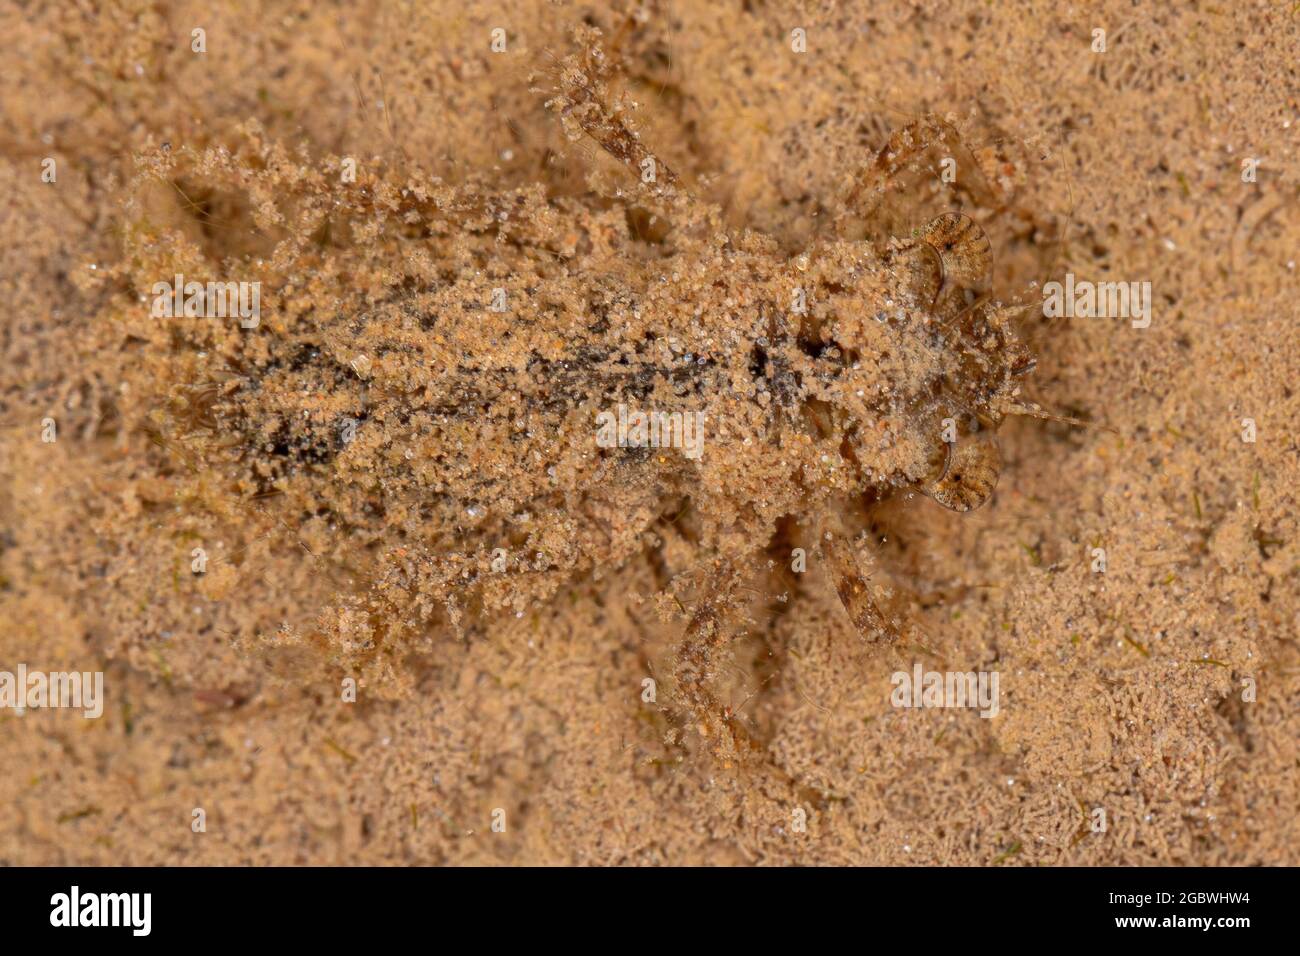 Dragonfly immaturo dell'ordine odonata sommersa mimetizzata nella sabbia Foto Stock